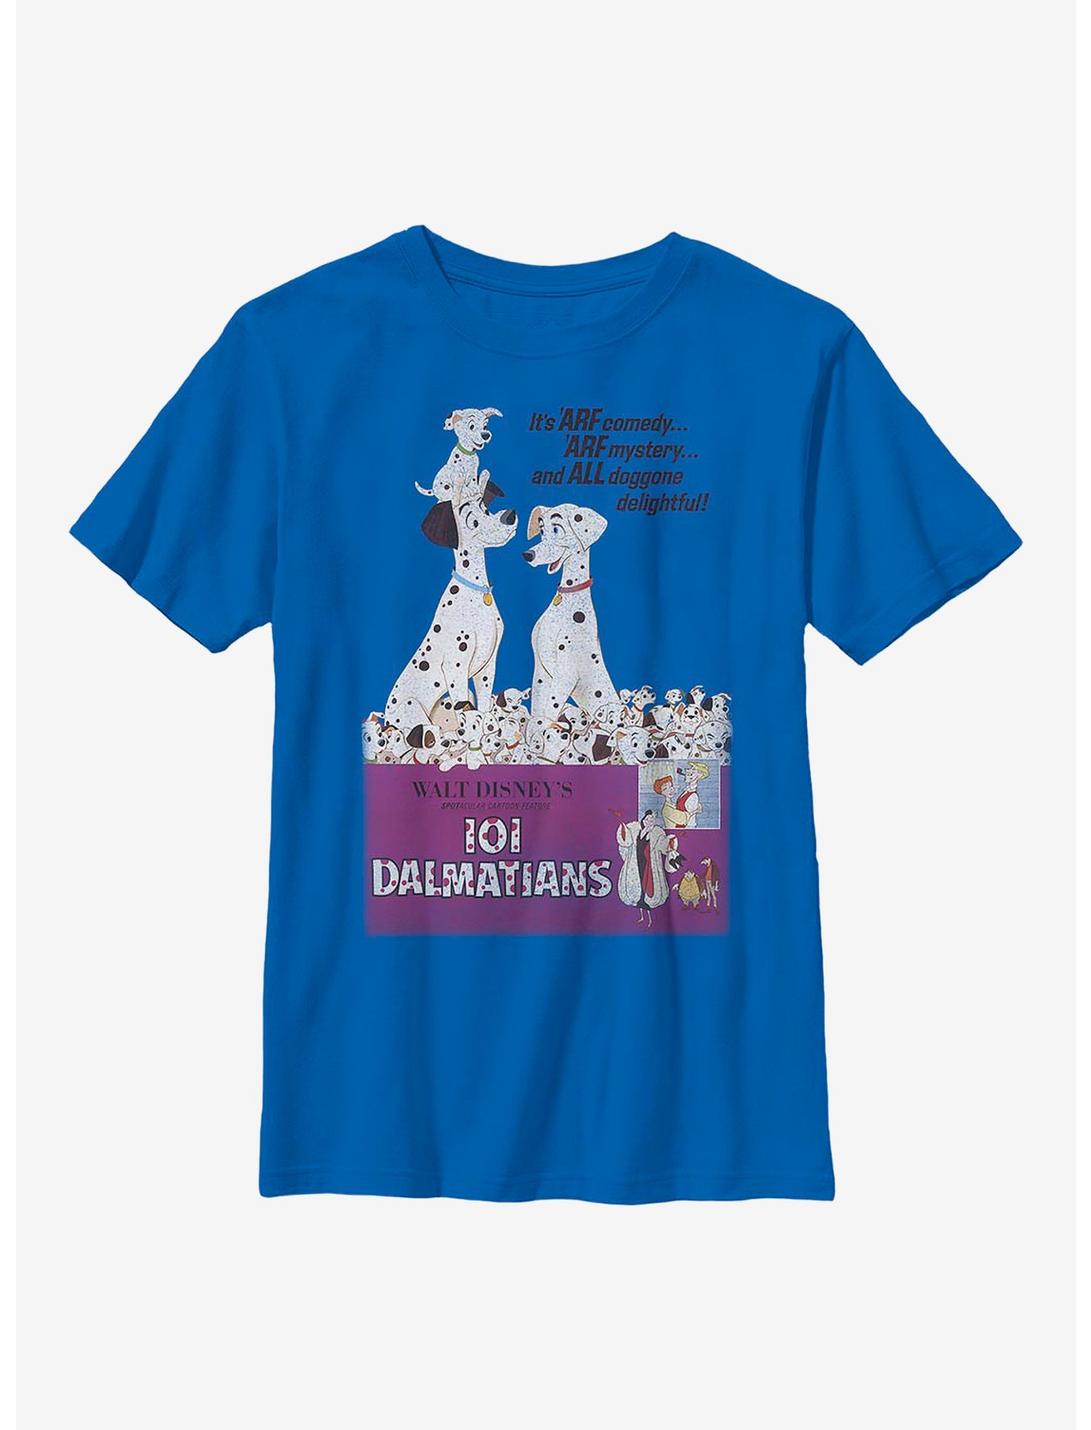 Disney 101 Dalmatians Vintage Poster Variant Youth T-Shirt, ROYAL, hi-res